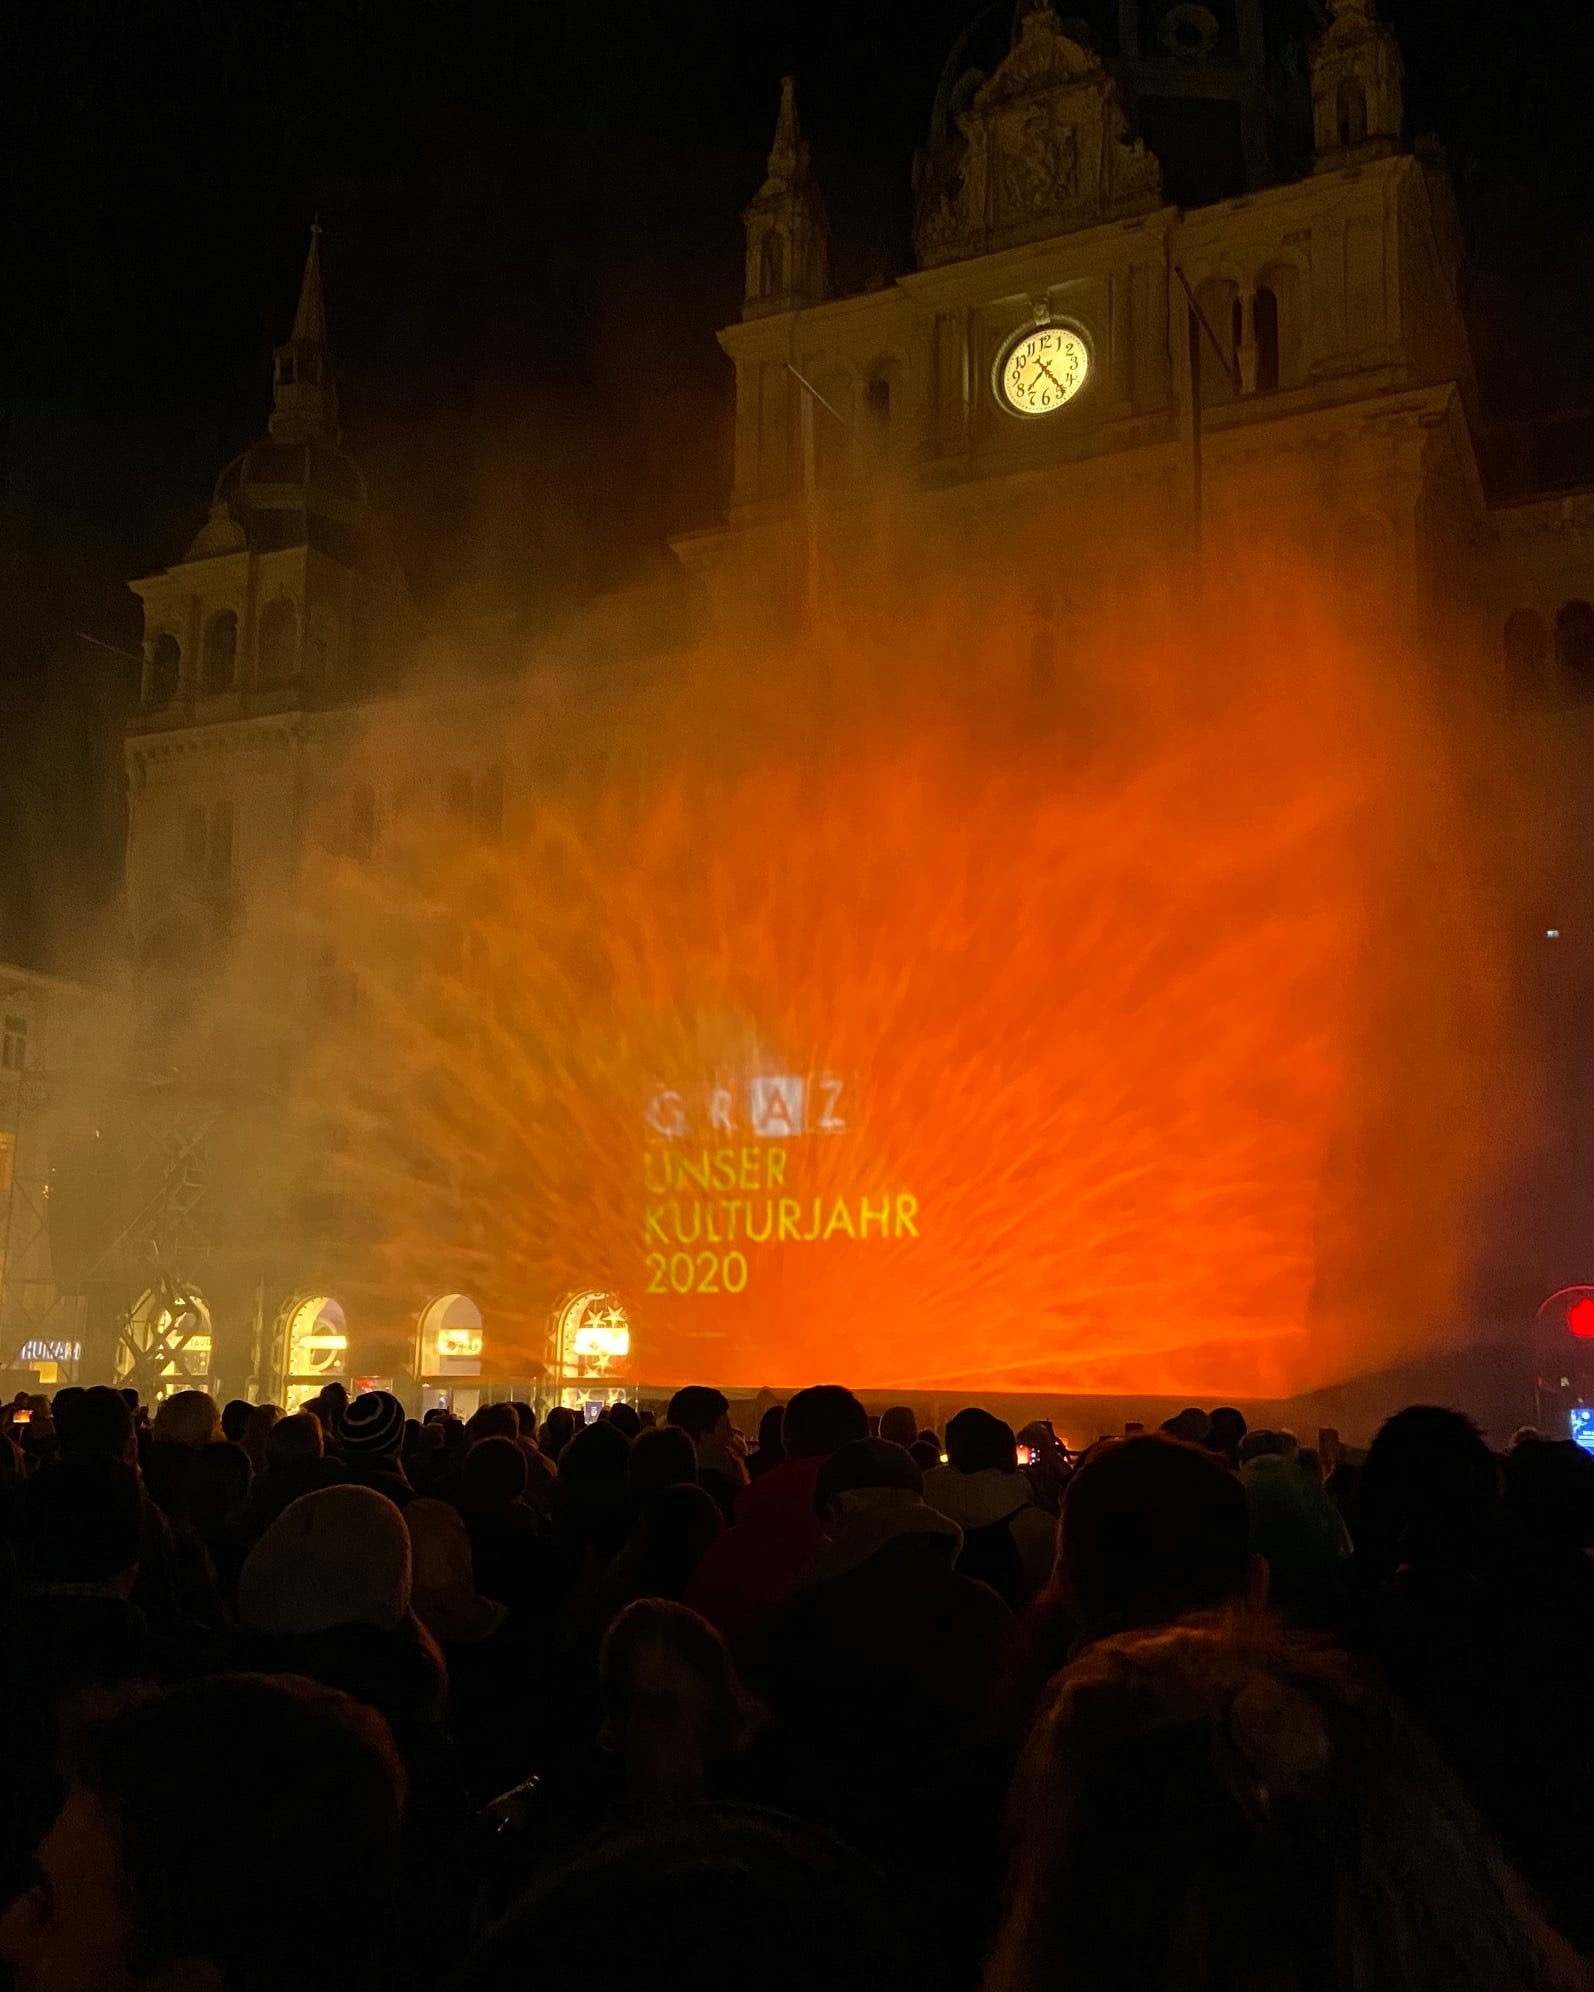 Graz Kulturjahr 2020, Silvesterlichtshow © Stadt Graz